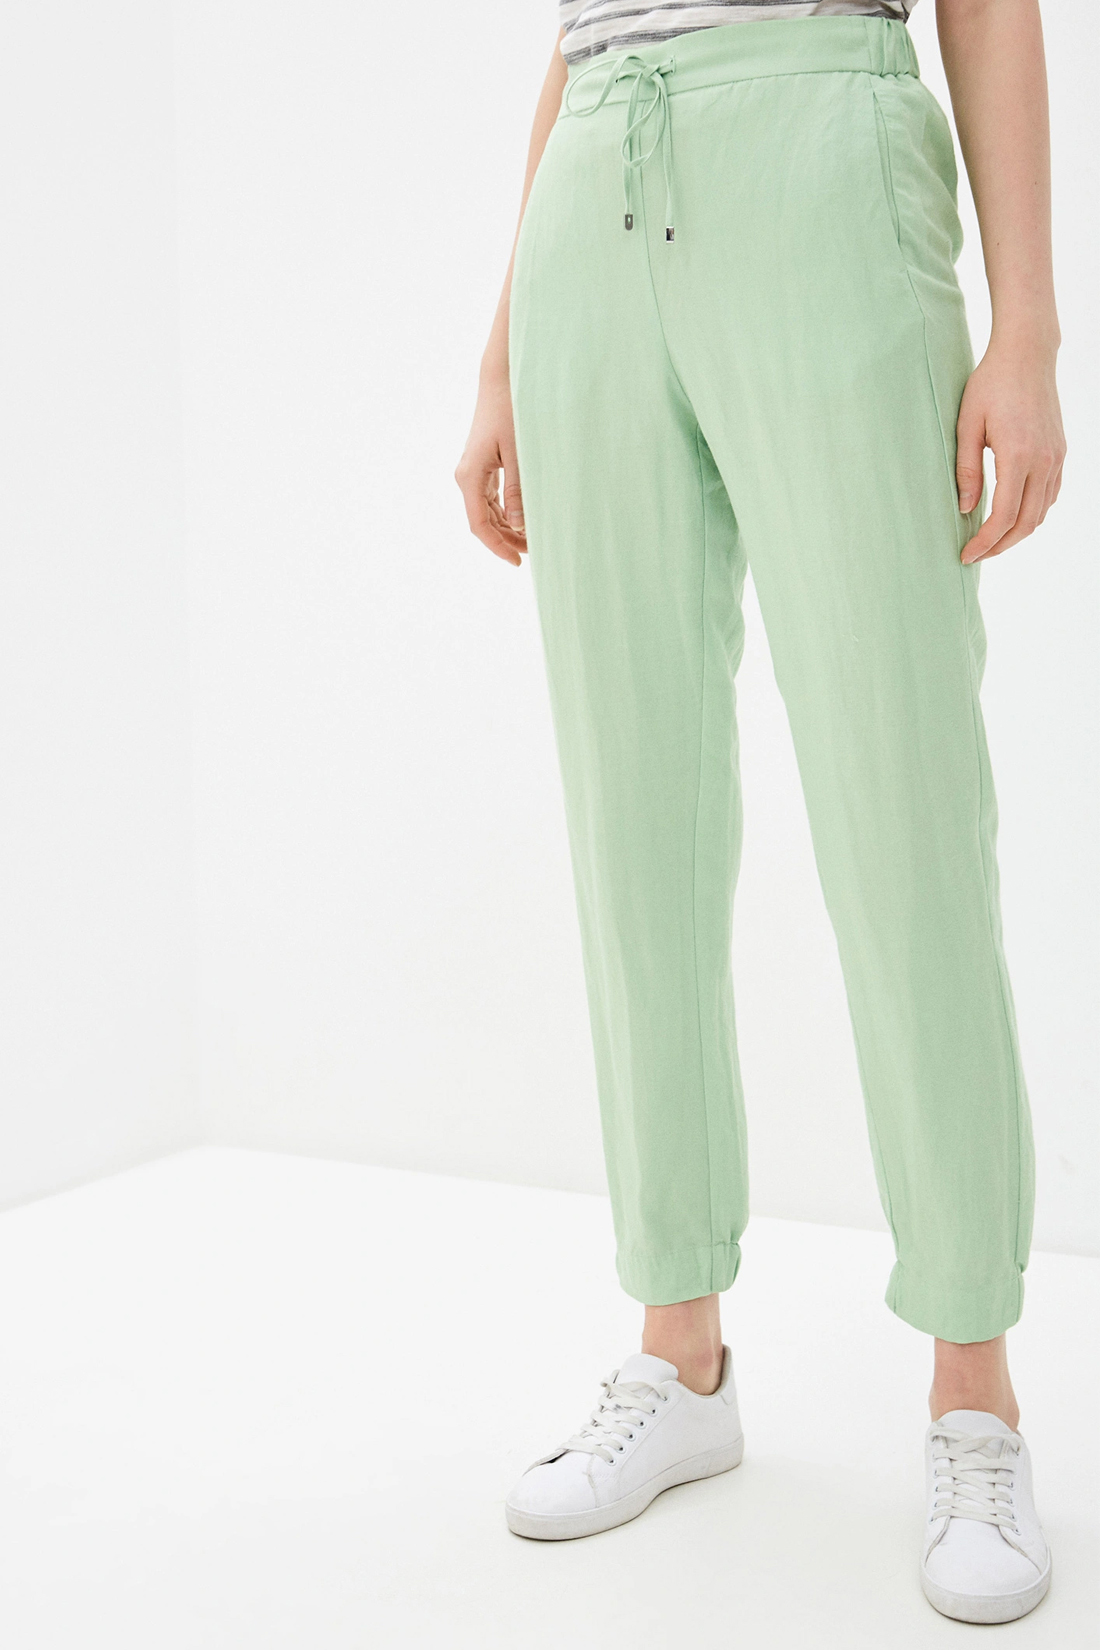 Спортивные брюки женские Baon B290048 зеленые M